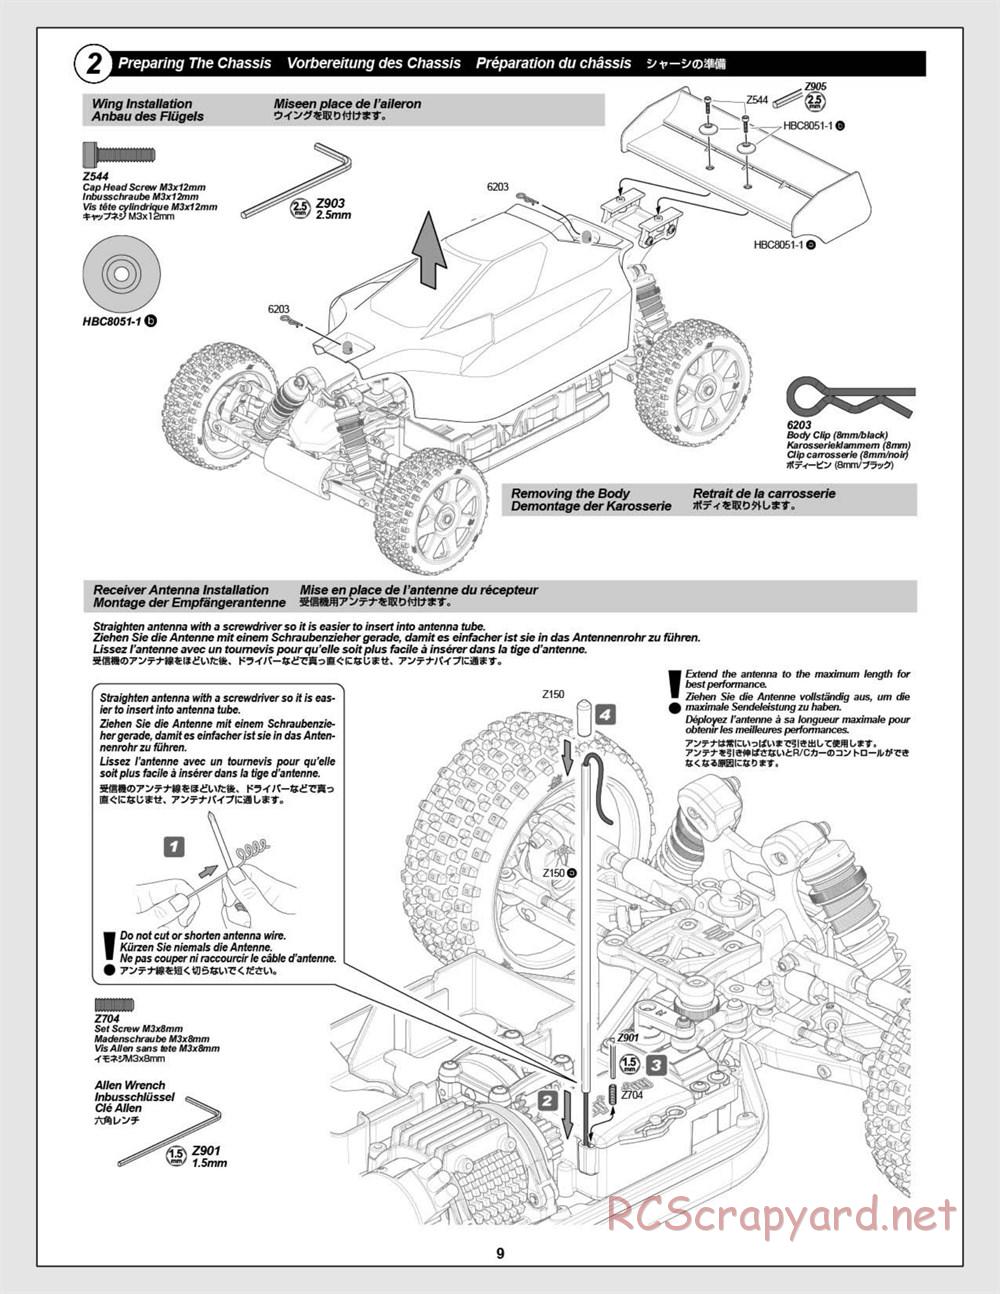 HPI - Vorza Flux HP - Manual - Page 9